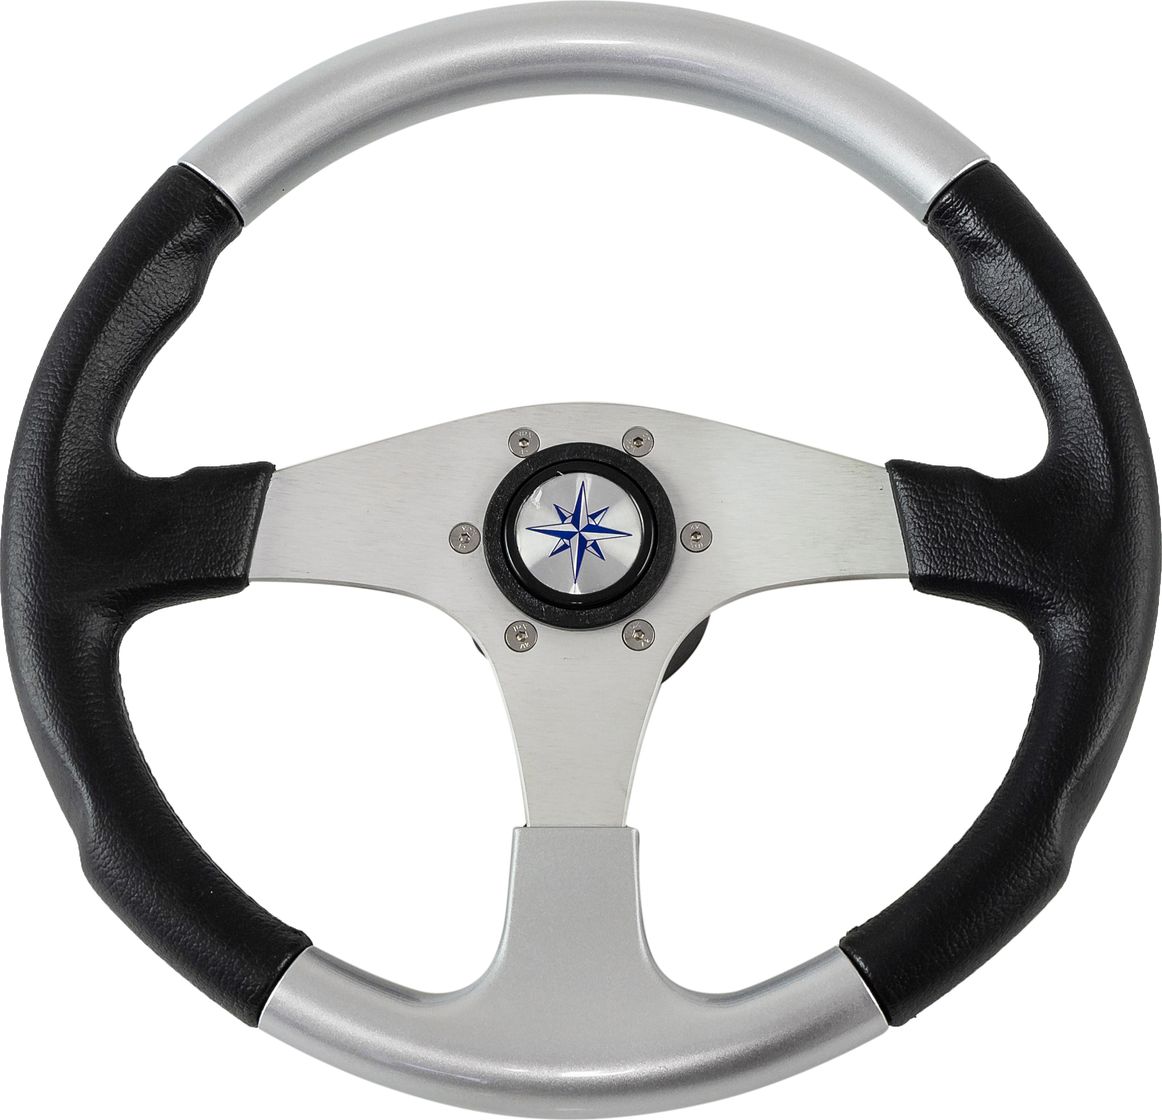 Рулевое колесо EVO MARINE 2 обод черносеребряный, спицы серебряные д. 355 мм VN850001-93 рулевое колесо elba sport обод спицы серебряные д 320 мм vn13321 01